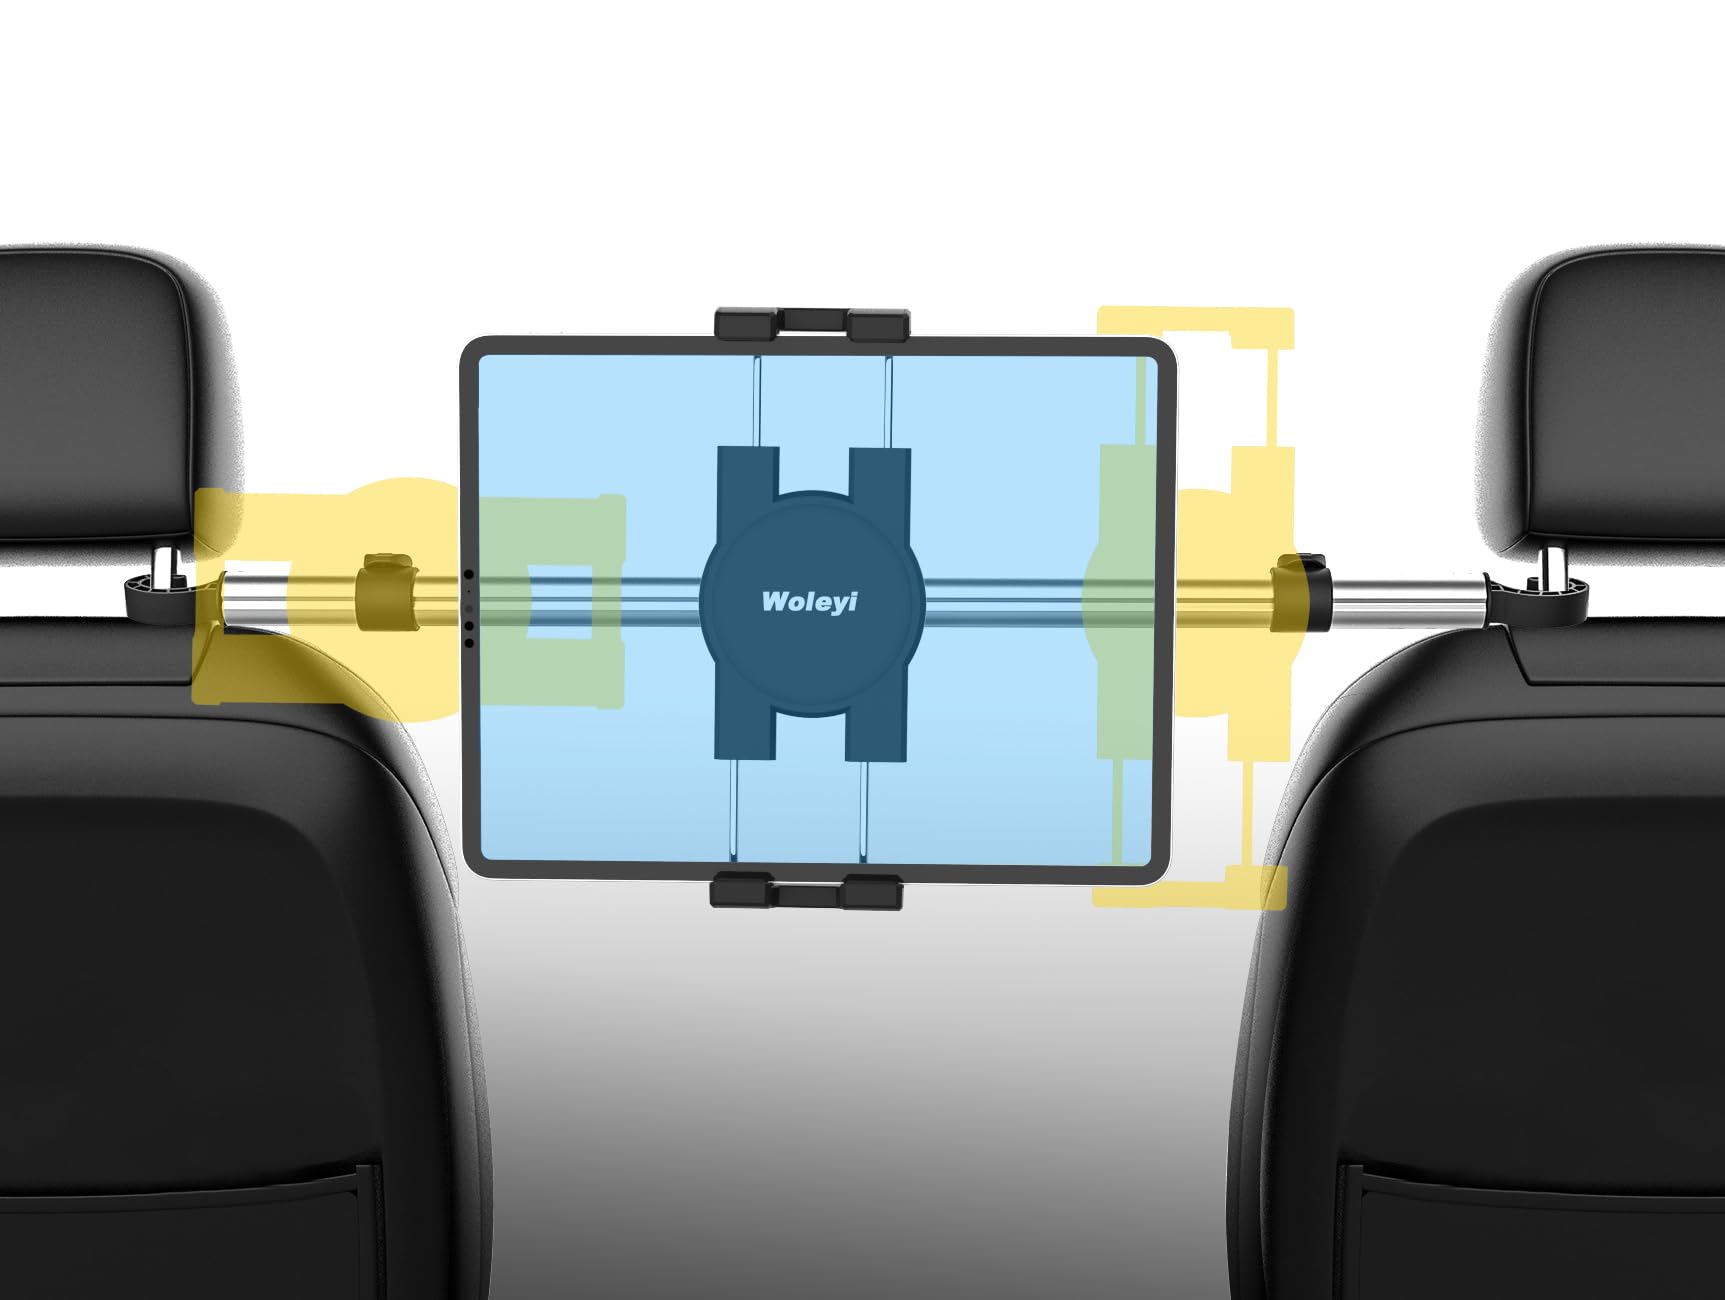 Auto Kopfstützen Tablet Halterung, woleyi Anti Shake KFZ Tablet Kopfstützenhalter mit 360° Drehbar für iPad Pro 9,7, 10,5, 12,9 Air Mini, iPhone, Galaxy Tabs, Switch, mehr 4-13" Handy und Tablet